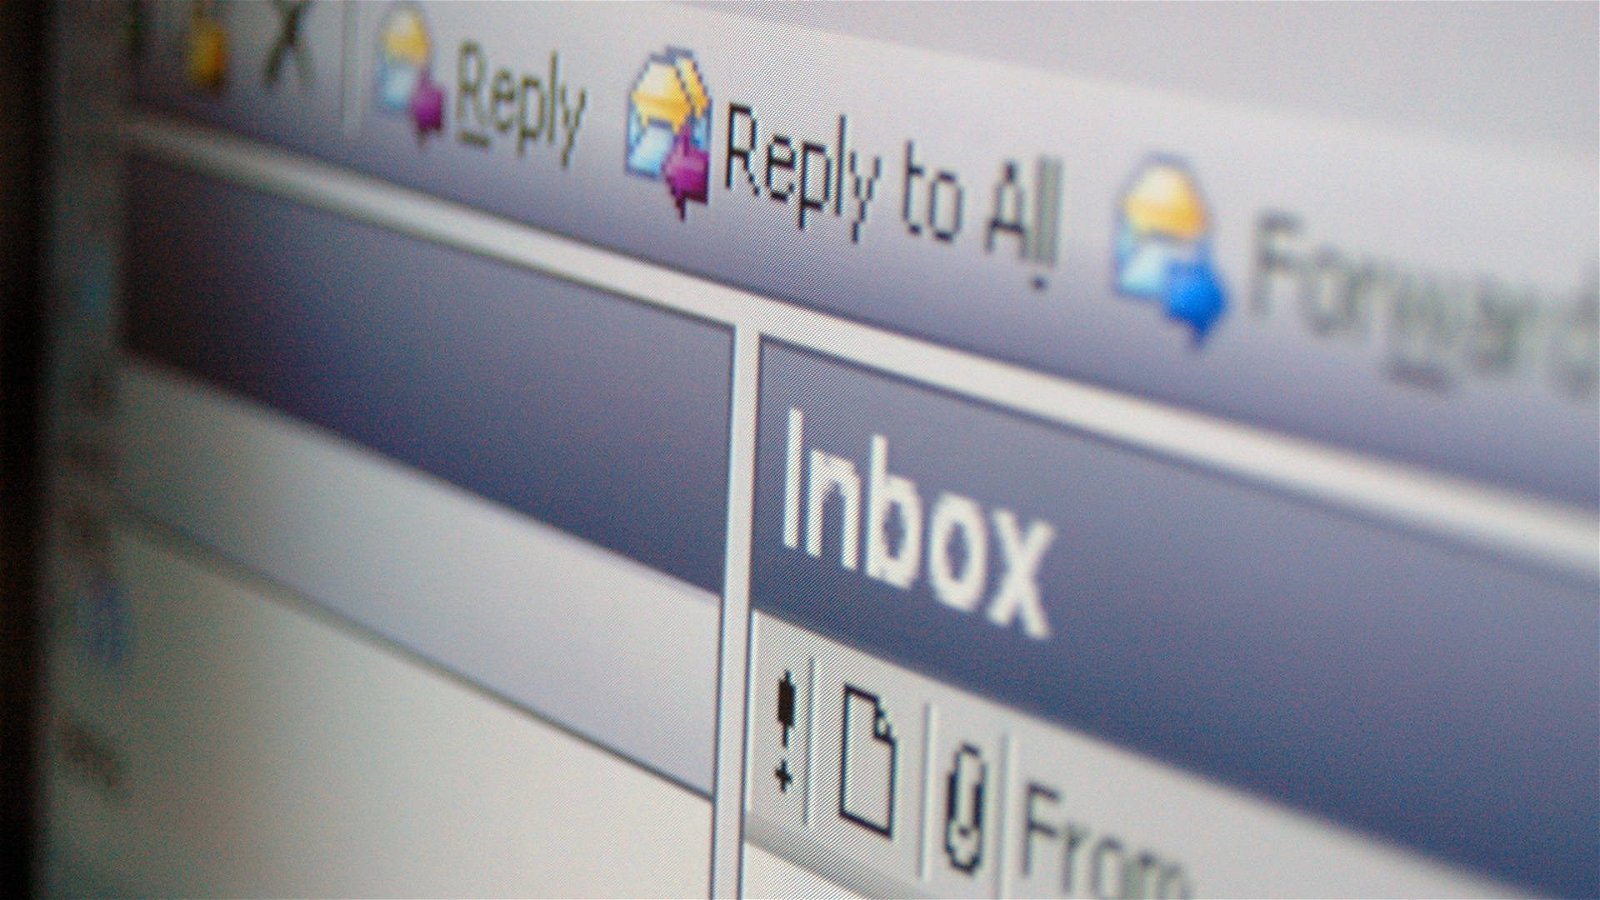 Immagine di E-mail offensiva: l’invio a più persone integra gli estremi della diffamazione?